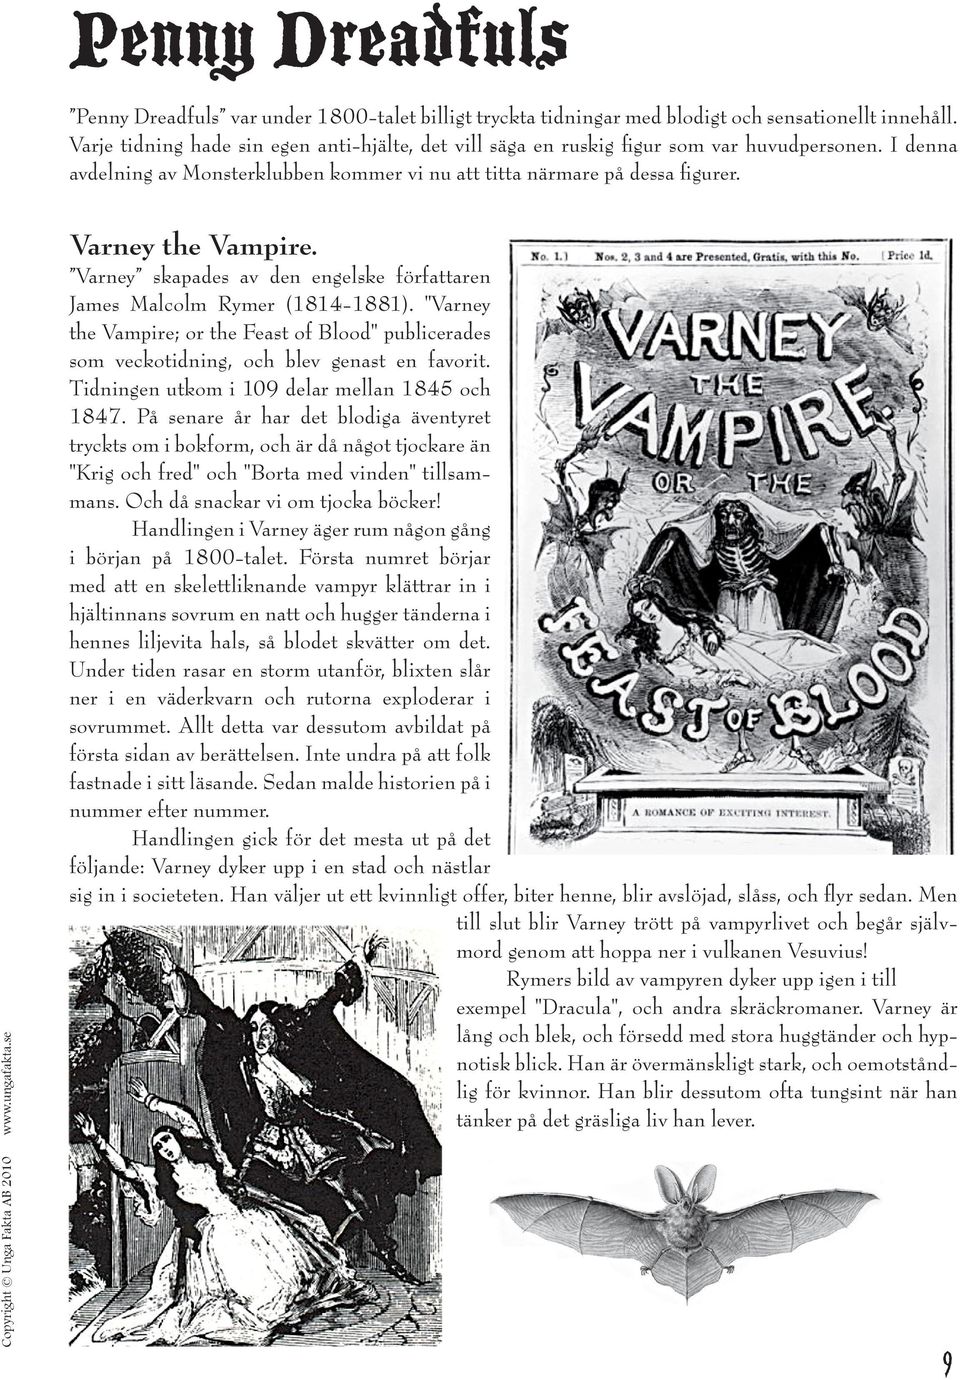 Varney skapades av den engelske författaren James Malcolm Rymer (1814-1881). "Varney the Vampire; or the Feast of Blood" publicerades som veckotidning, och blev genast en favorit.